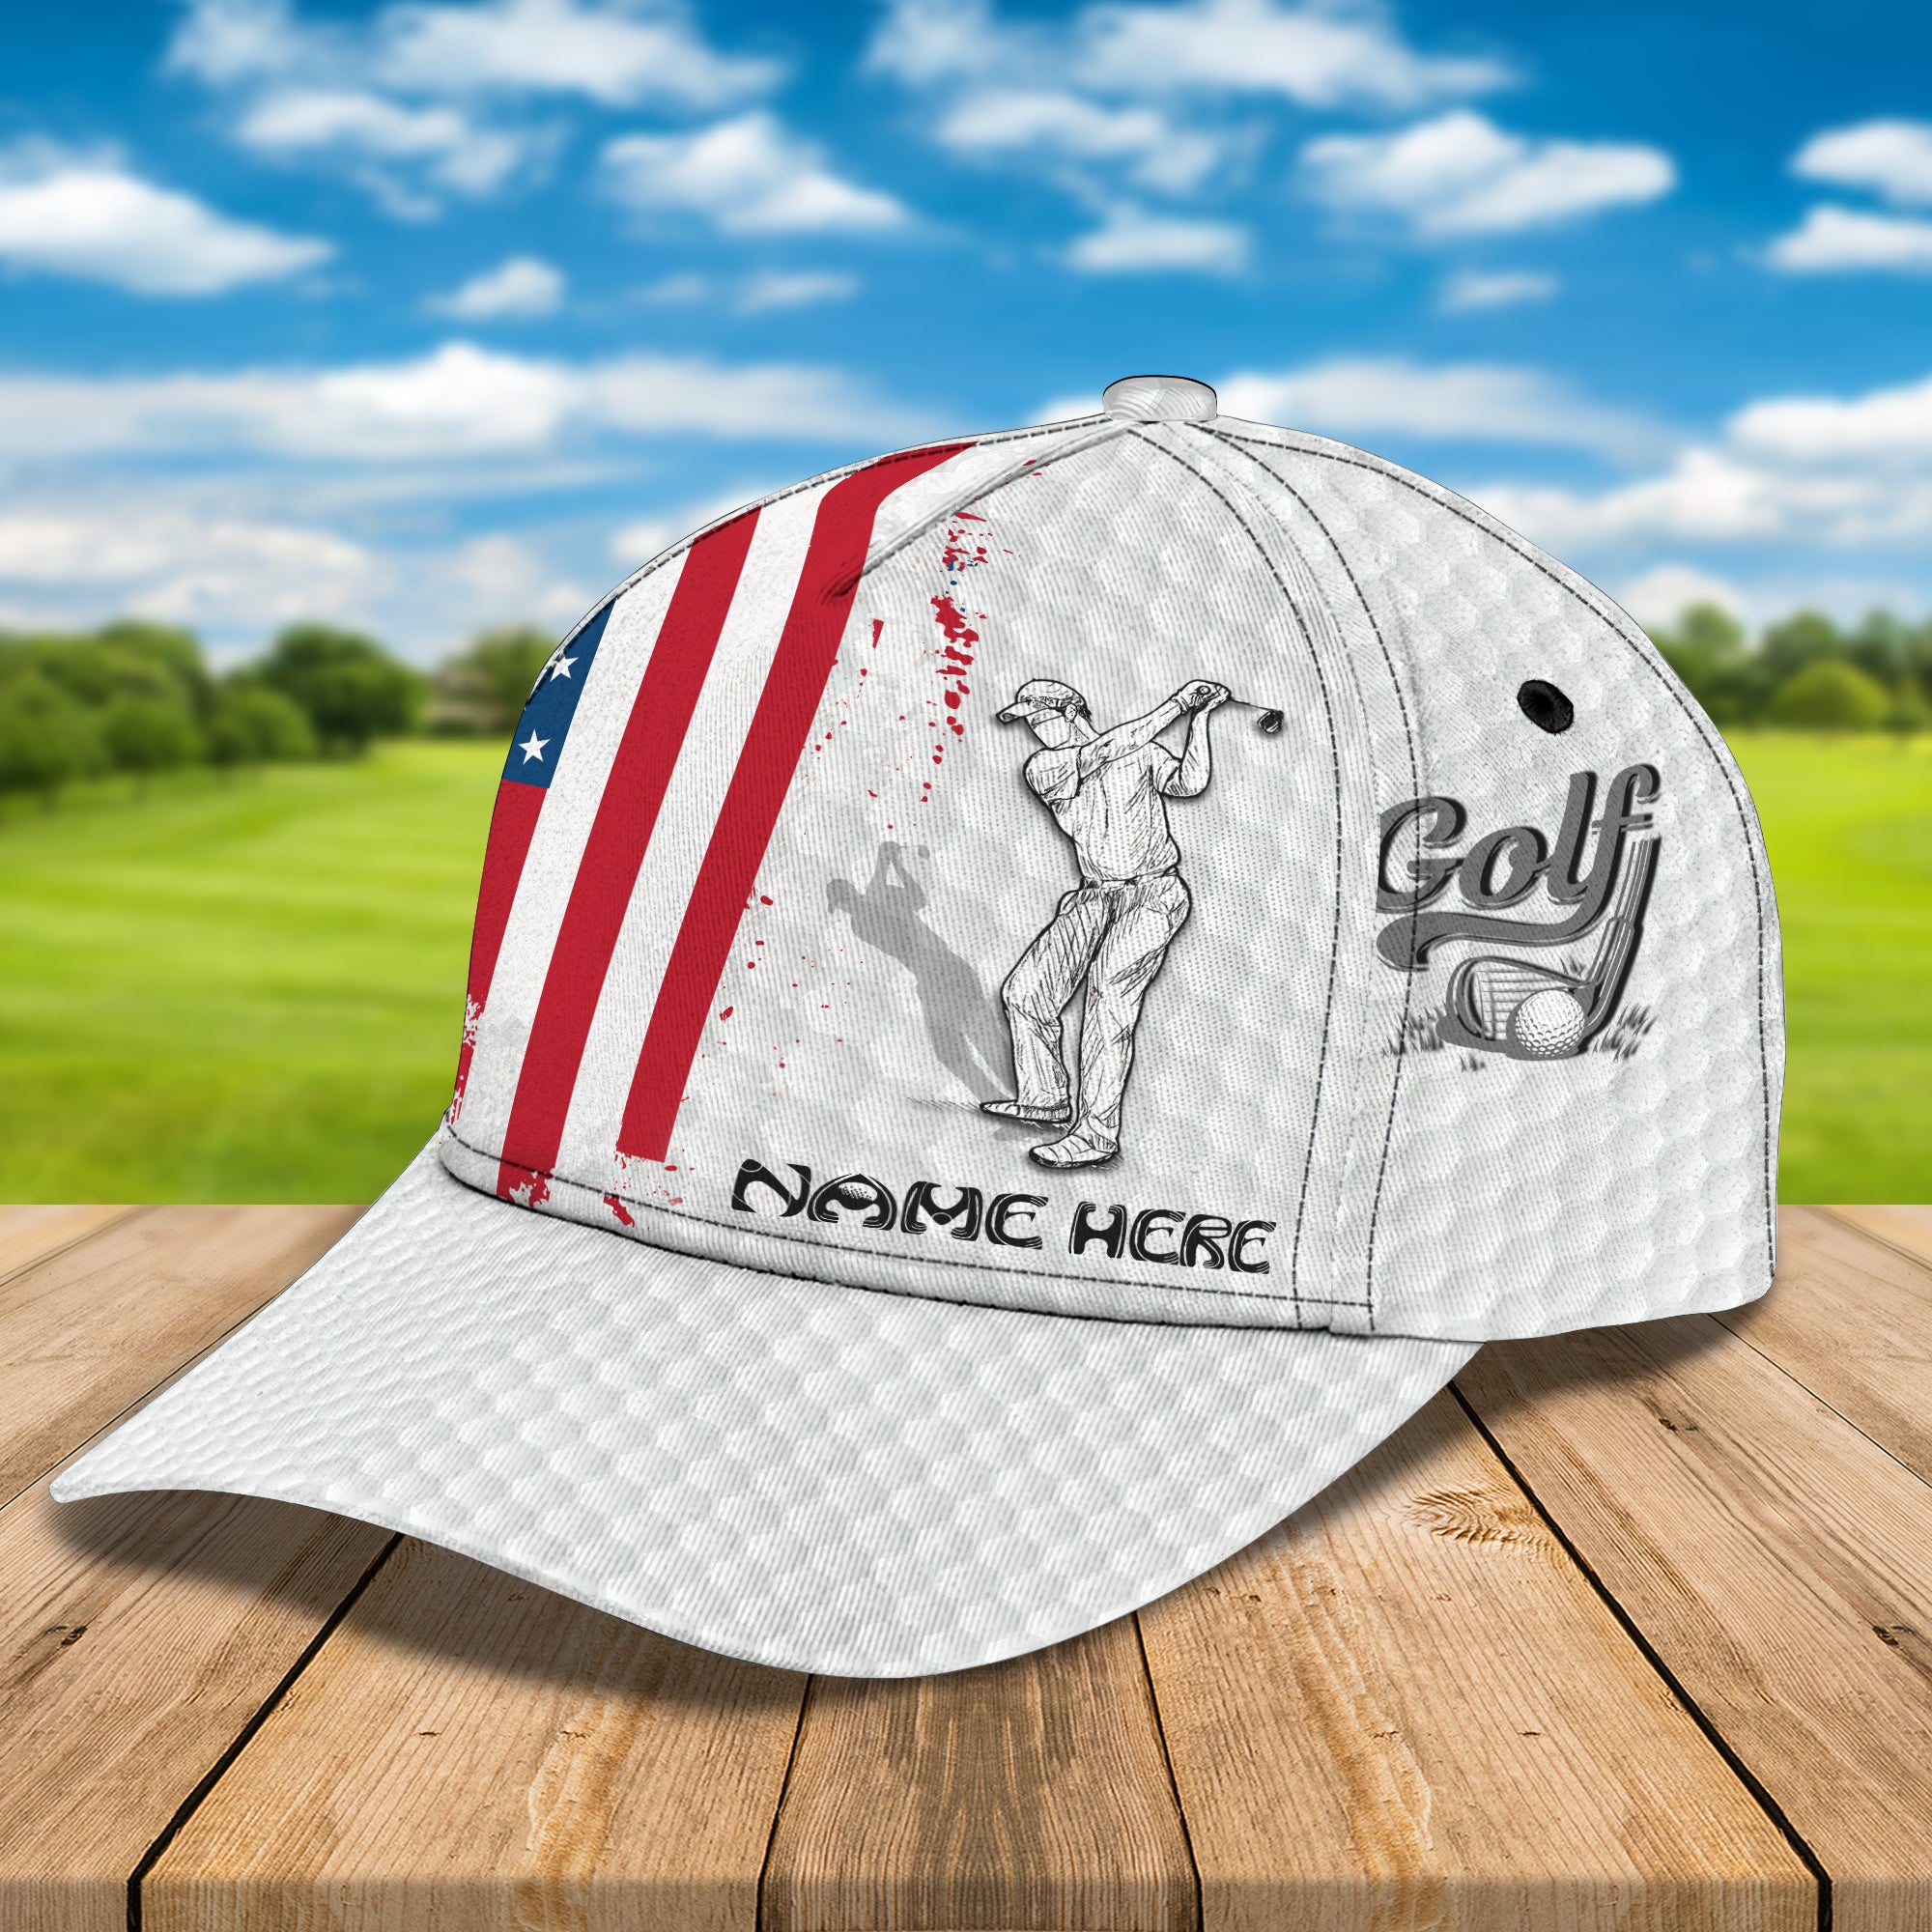 Golf Club 01 - Personalized Name Cap - LTD92